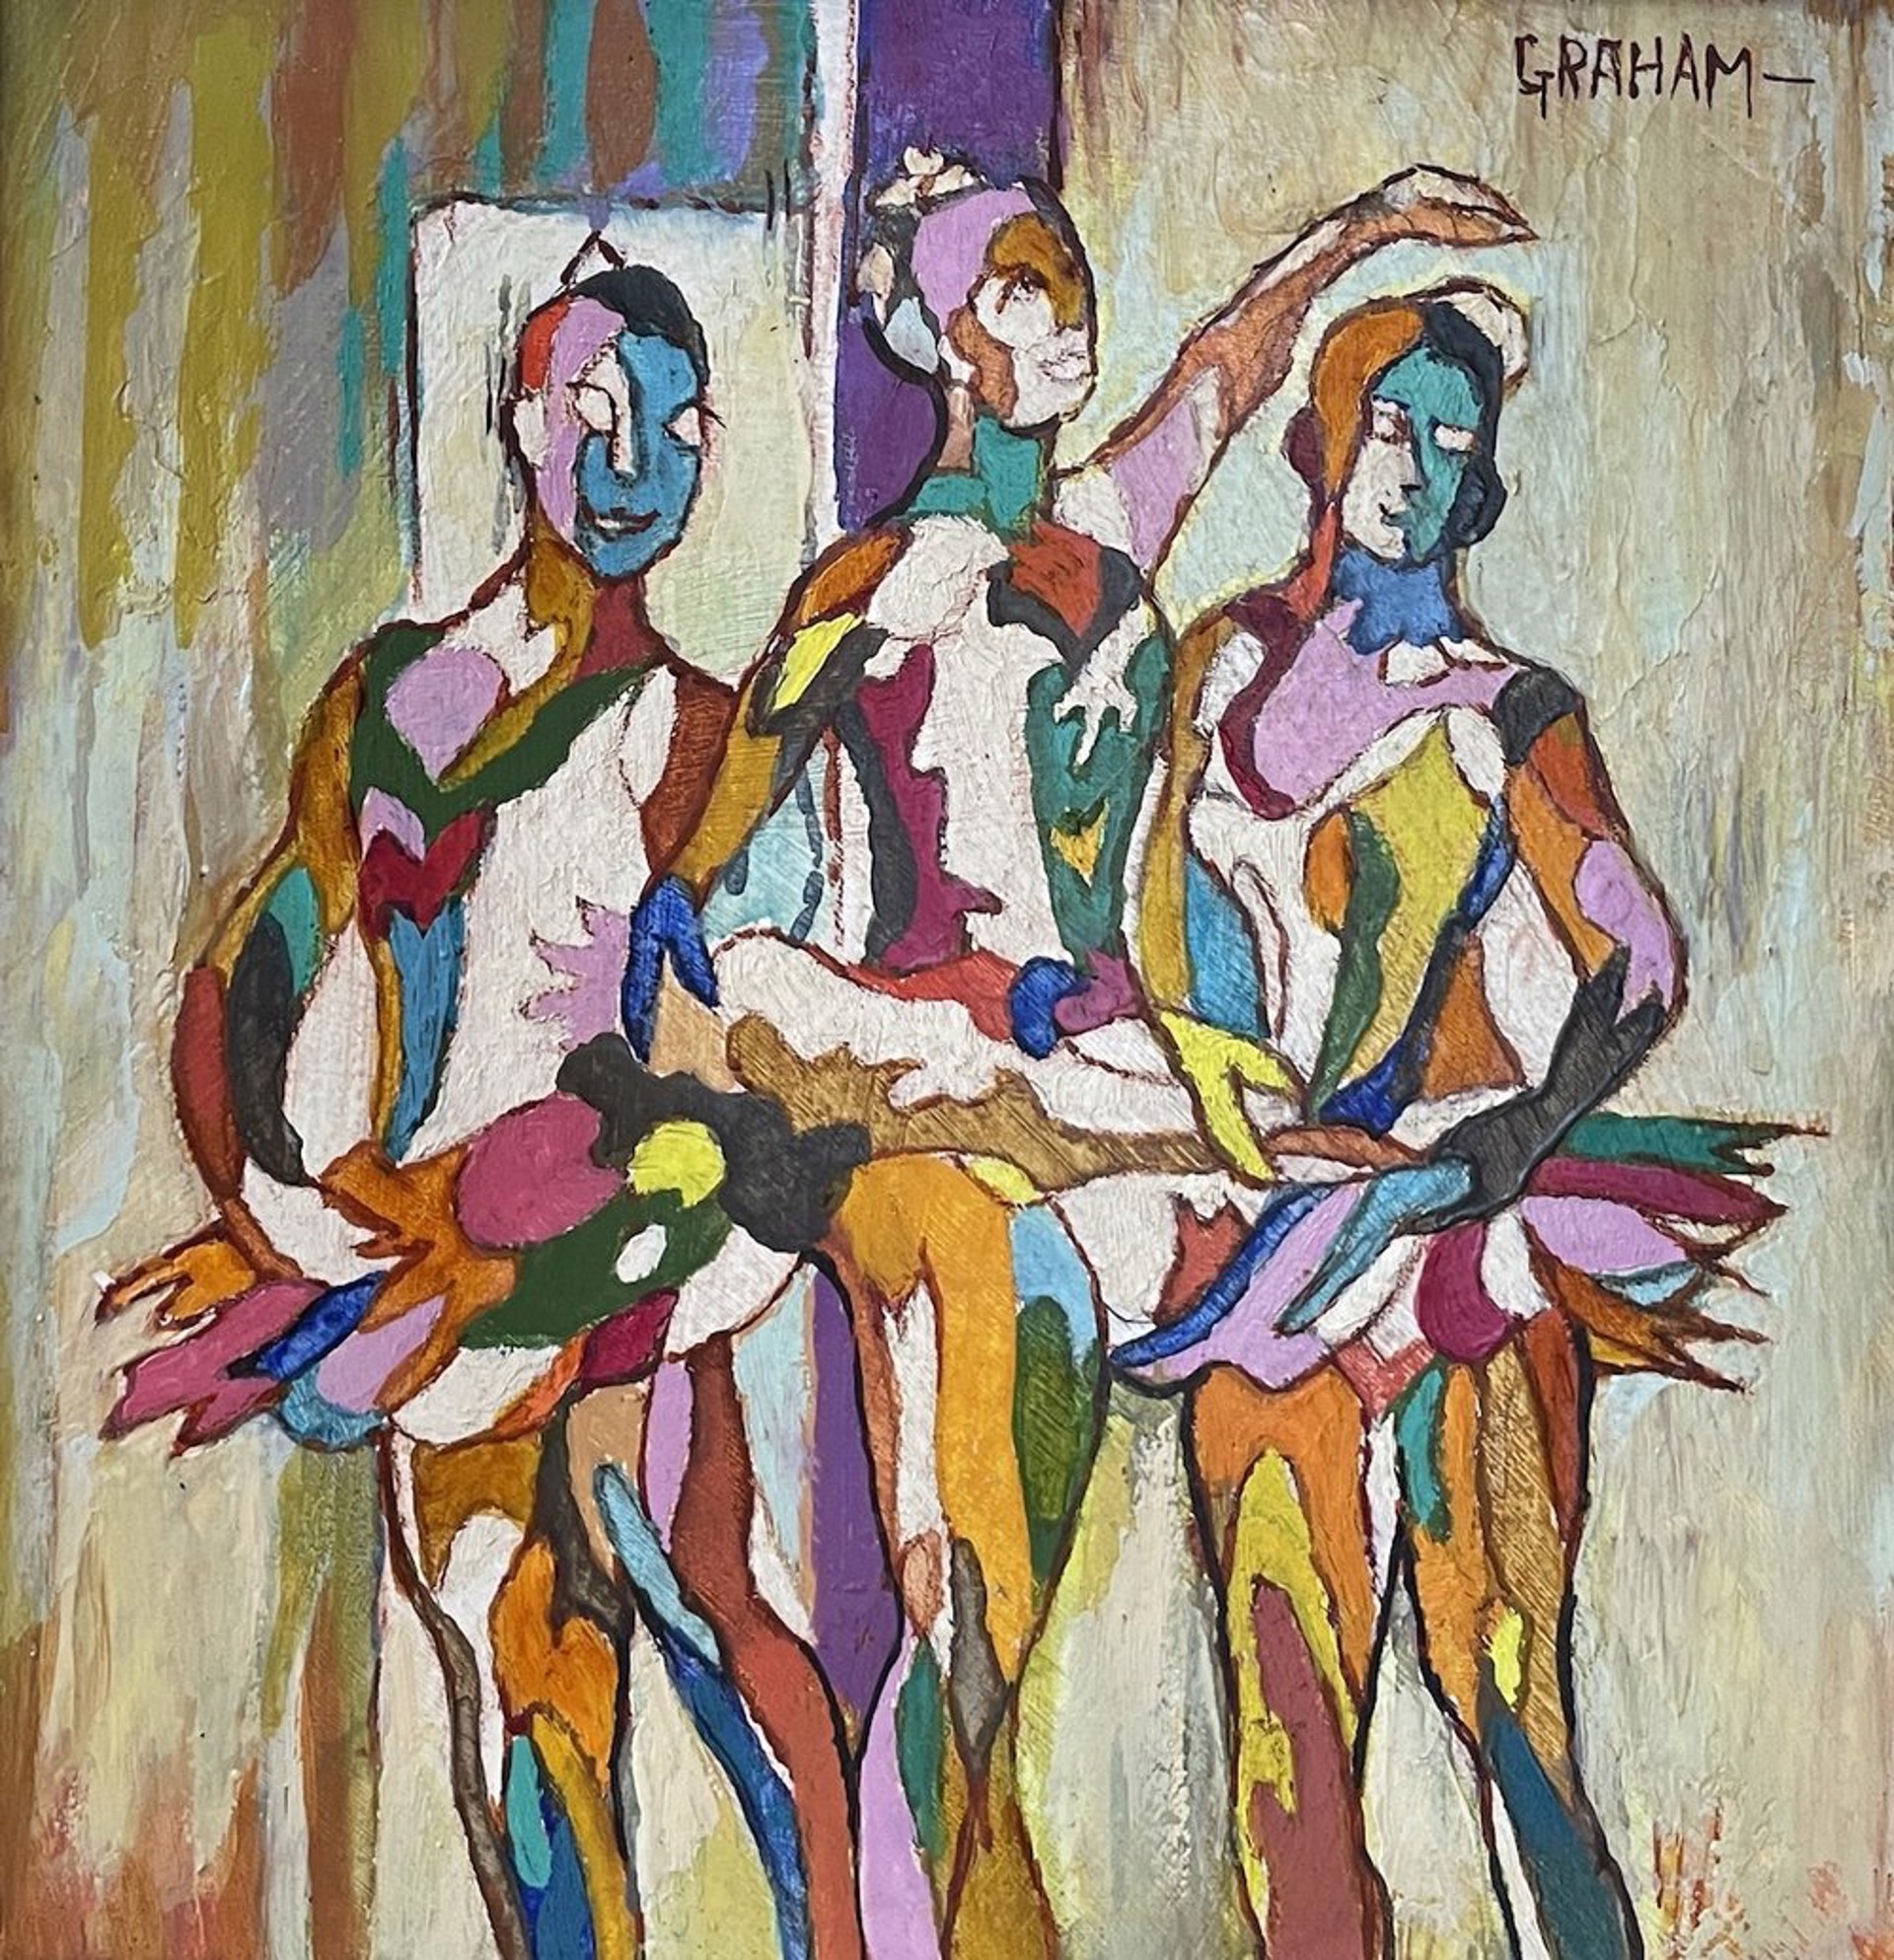 Ballerinas by Ellwood Graham